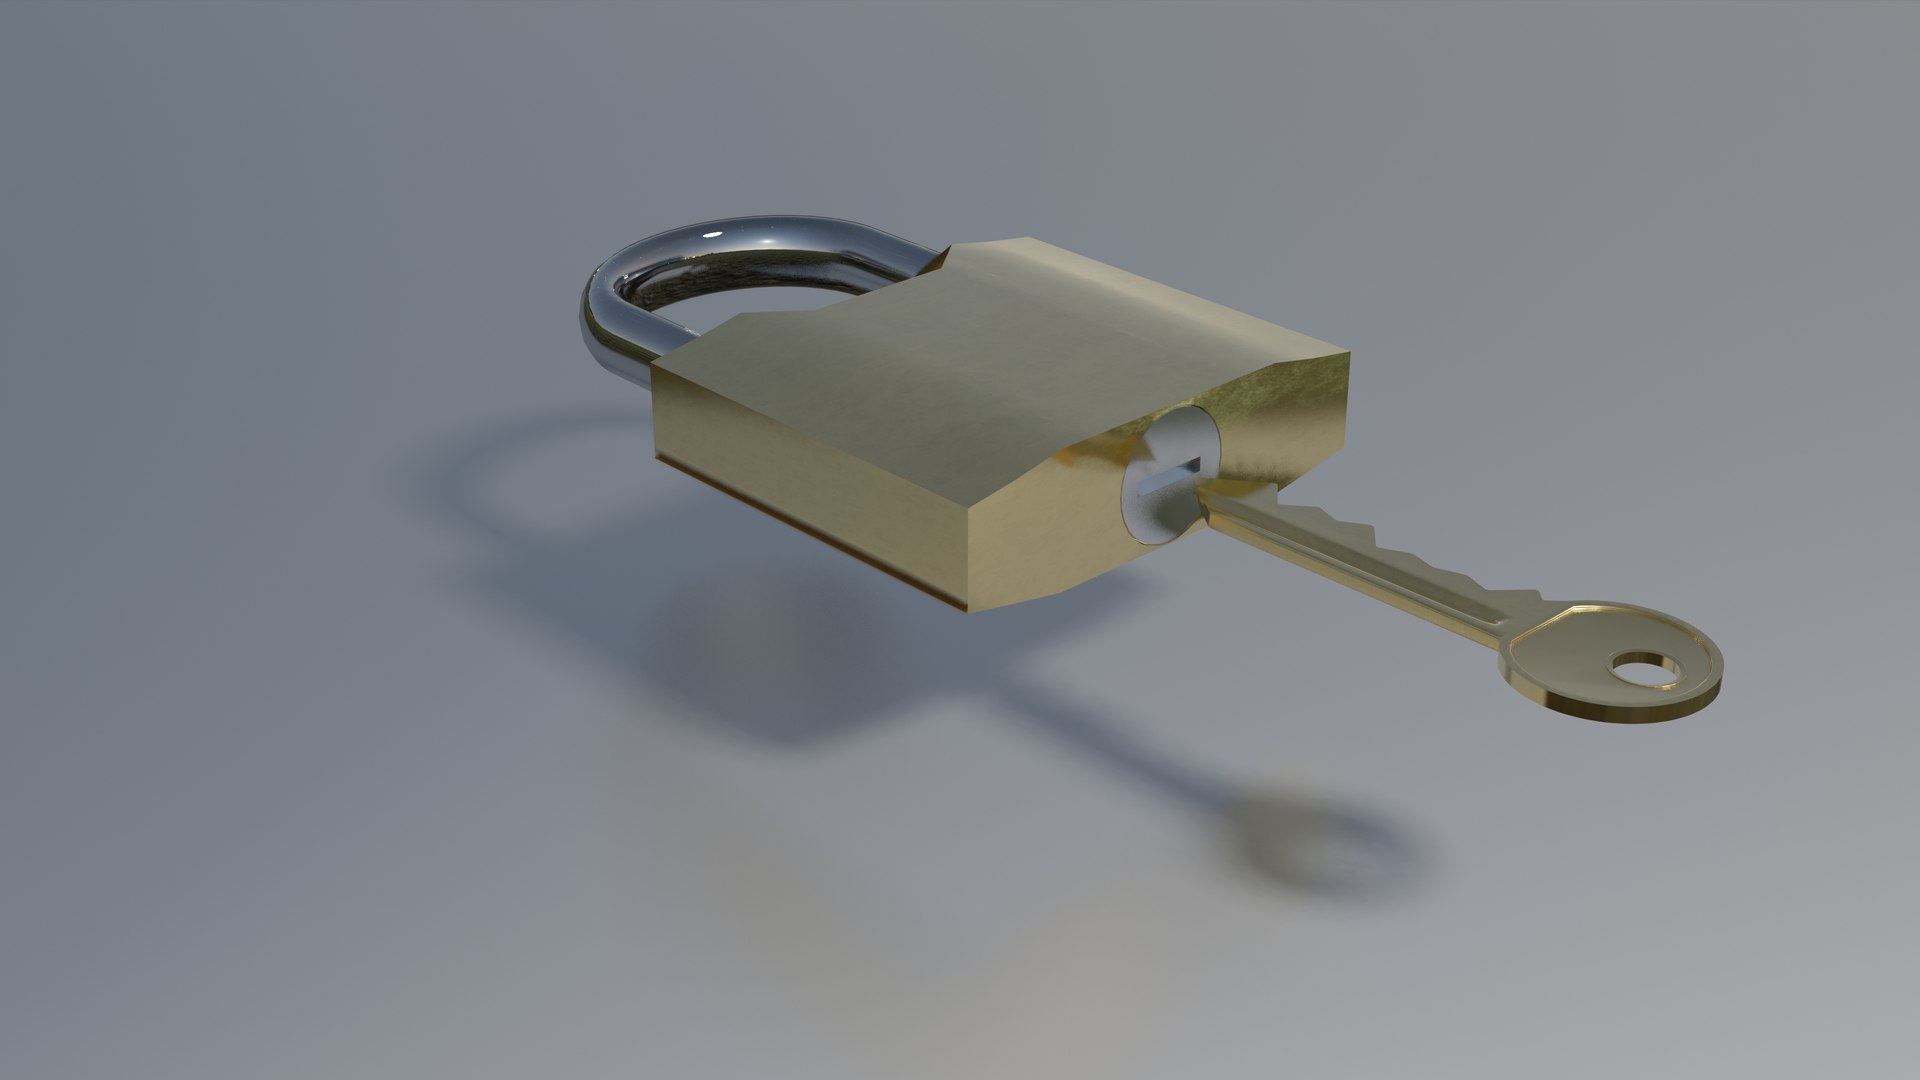 Padlock lock 3D model - TurboSquid 1579806